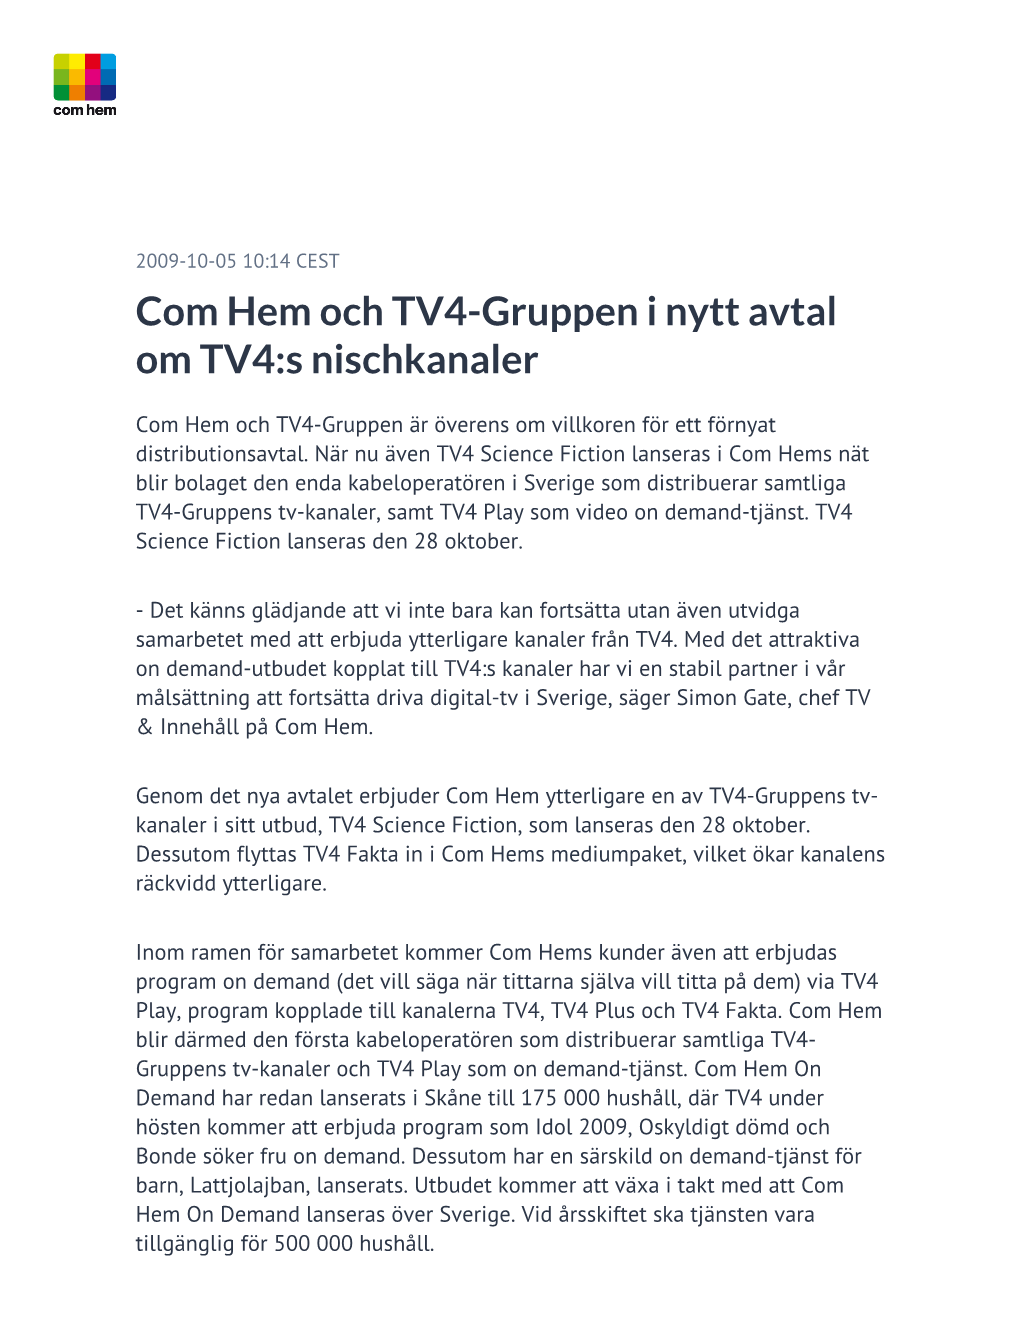 Com Hem Och TV4-Gruppen I Nytt Avtal Om TV4:S Nischkanaler